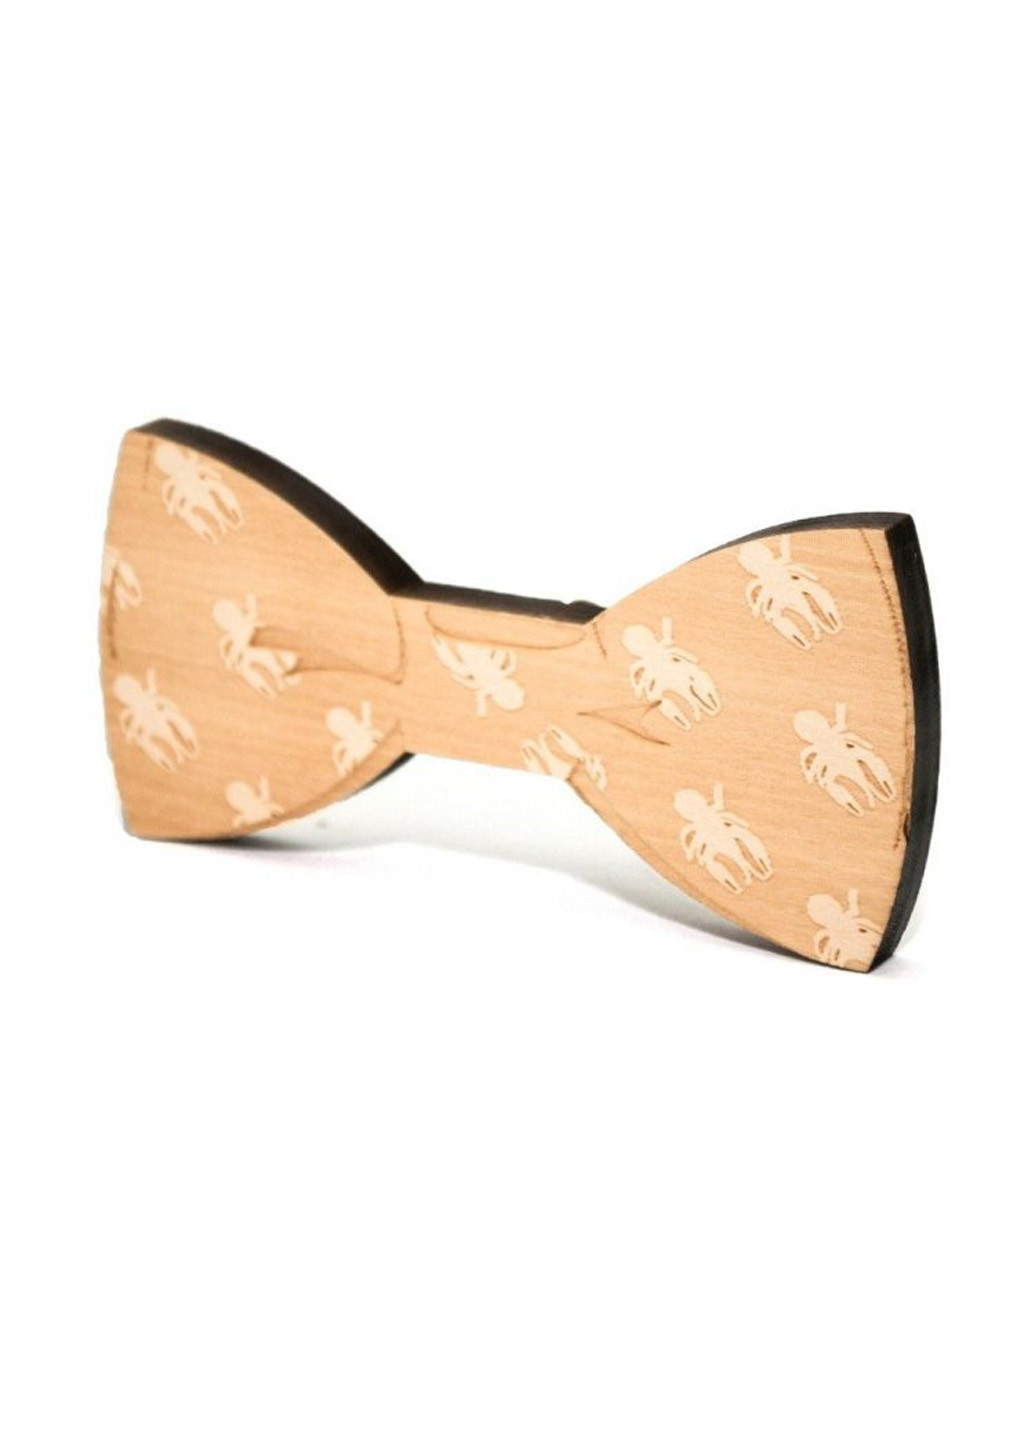 Мужской галстук бабочка 5х10 см Handmade (193792113)